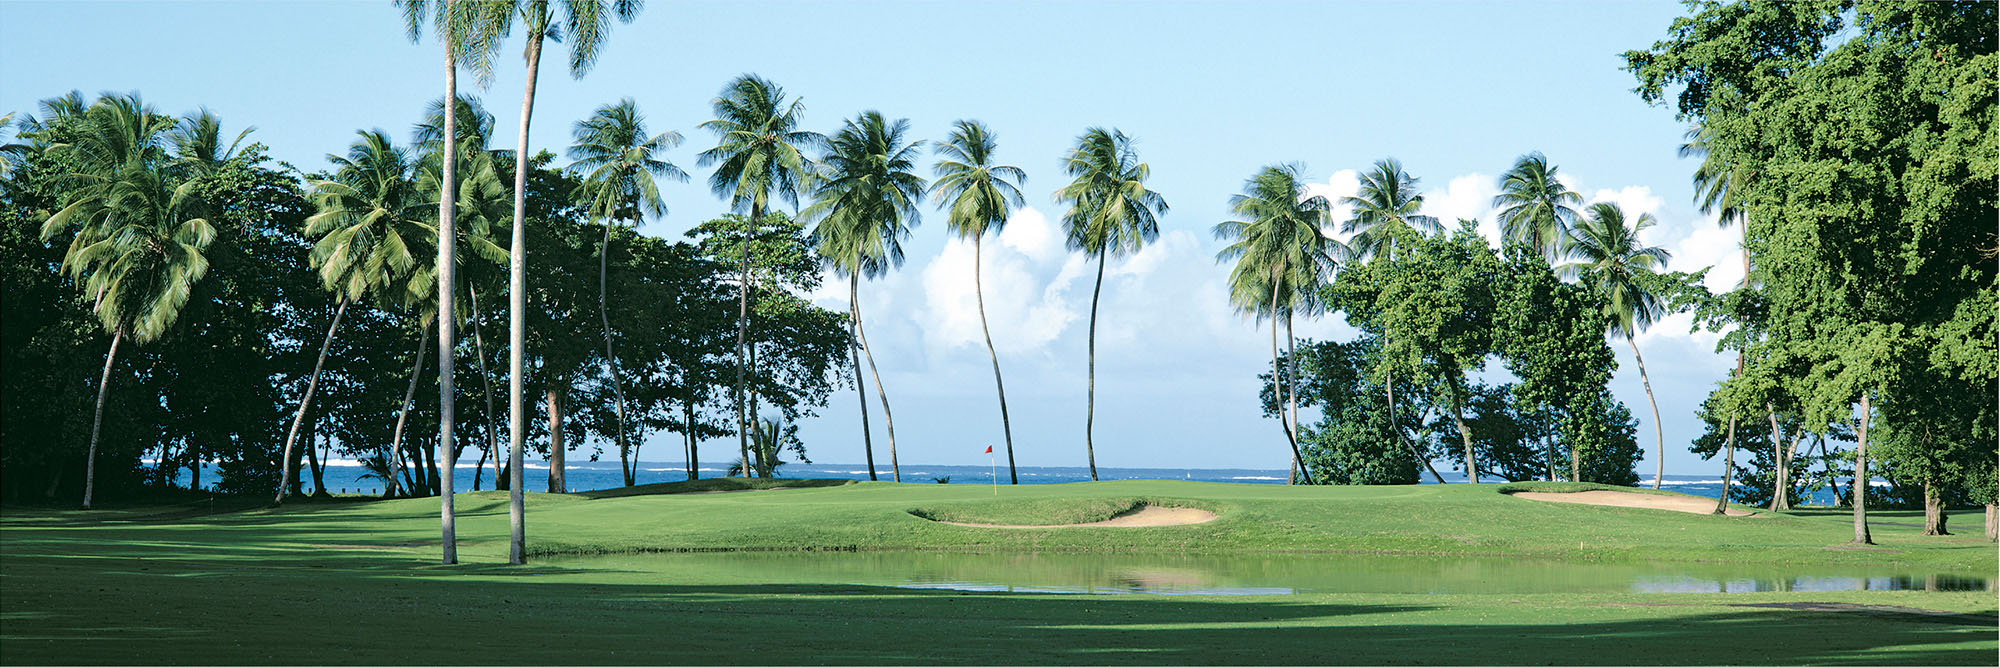 Golf Course Image - Dorado Beach No. 13